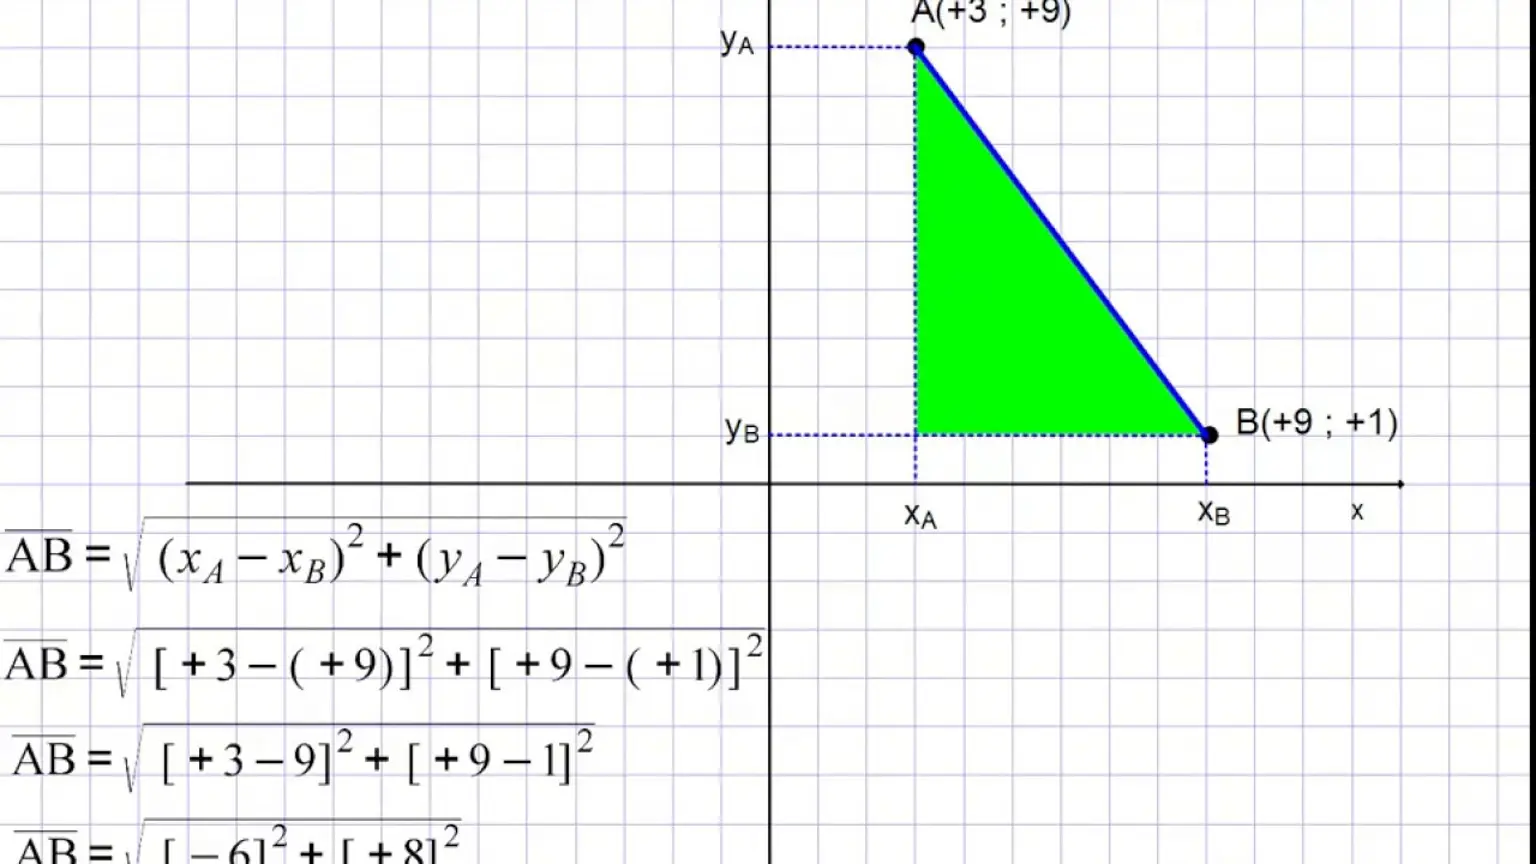 d(P1,P2) = √((x2-x1)2+(y2-y1)2)